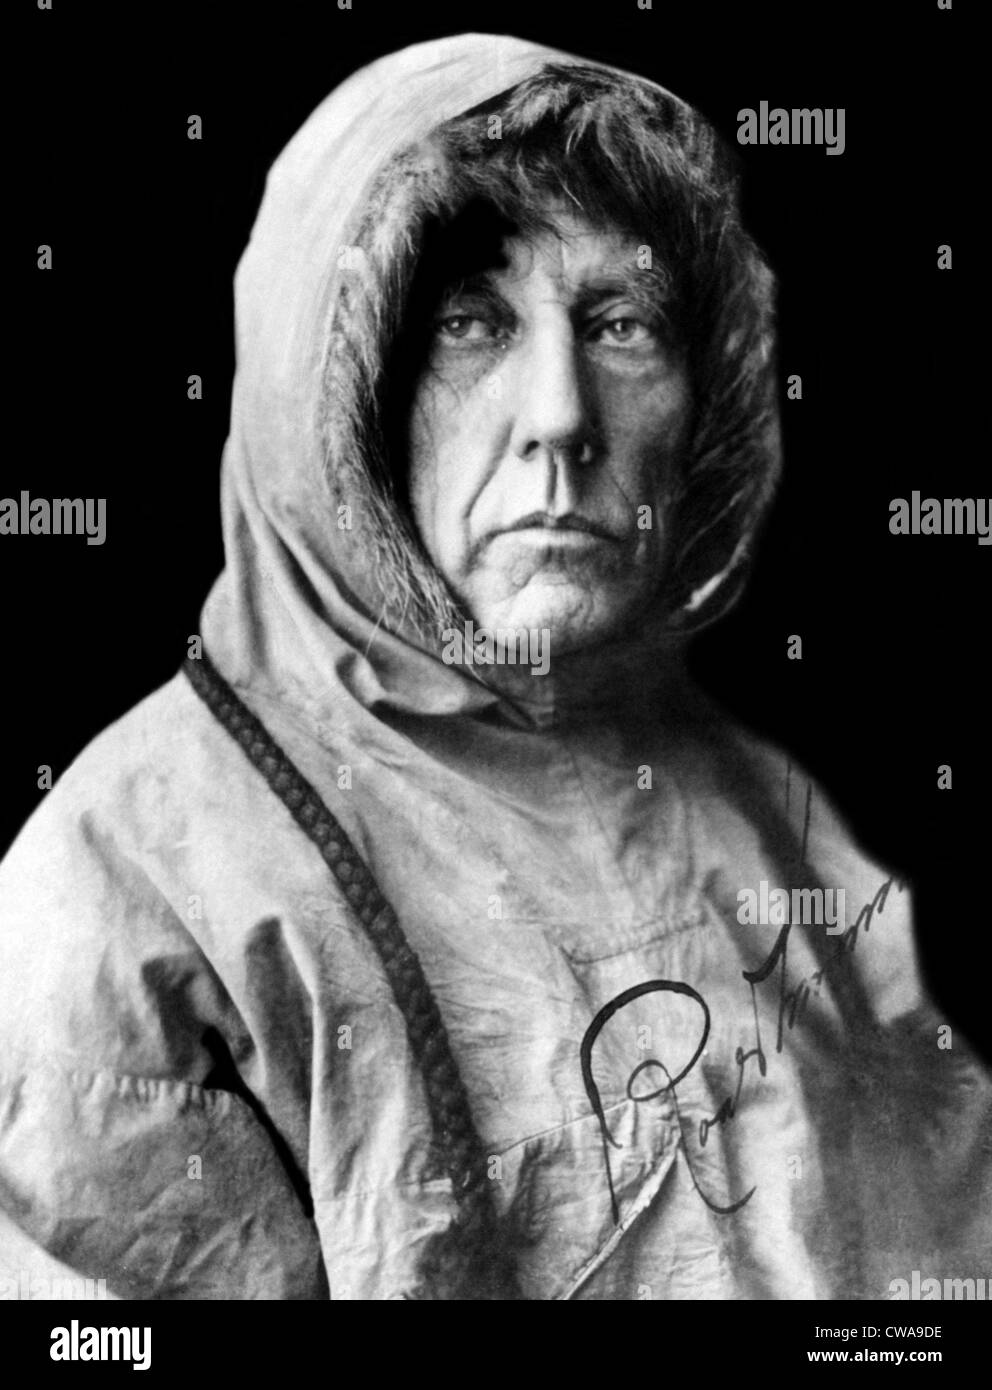 Roald Amundsen, la prima persona a raggiungere il Polo Sud. L'esploratore norvegese ha reso vi nel 1911. Foto scattata nel 1925. Foto Stock